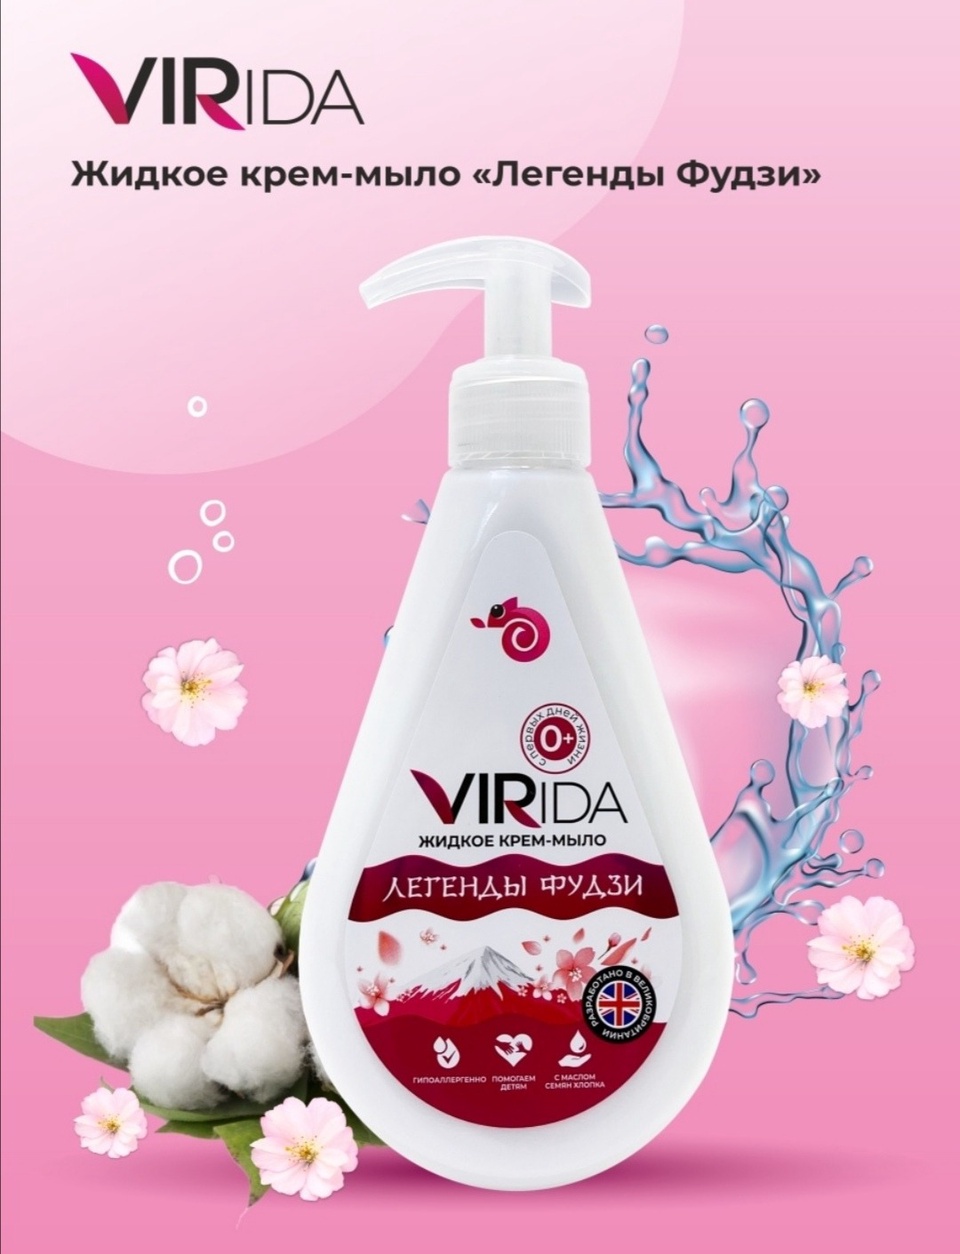 Virida жидкое крем-мыло легенды Фудзи - 180 ₽, заказать онлайн.